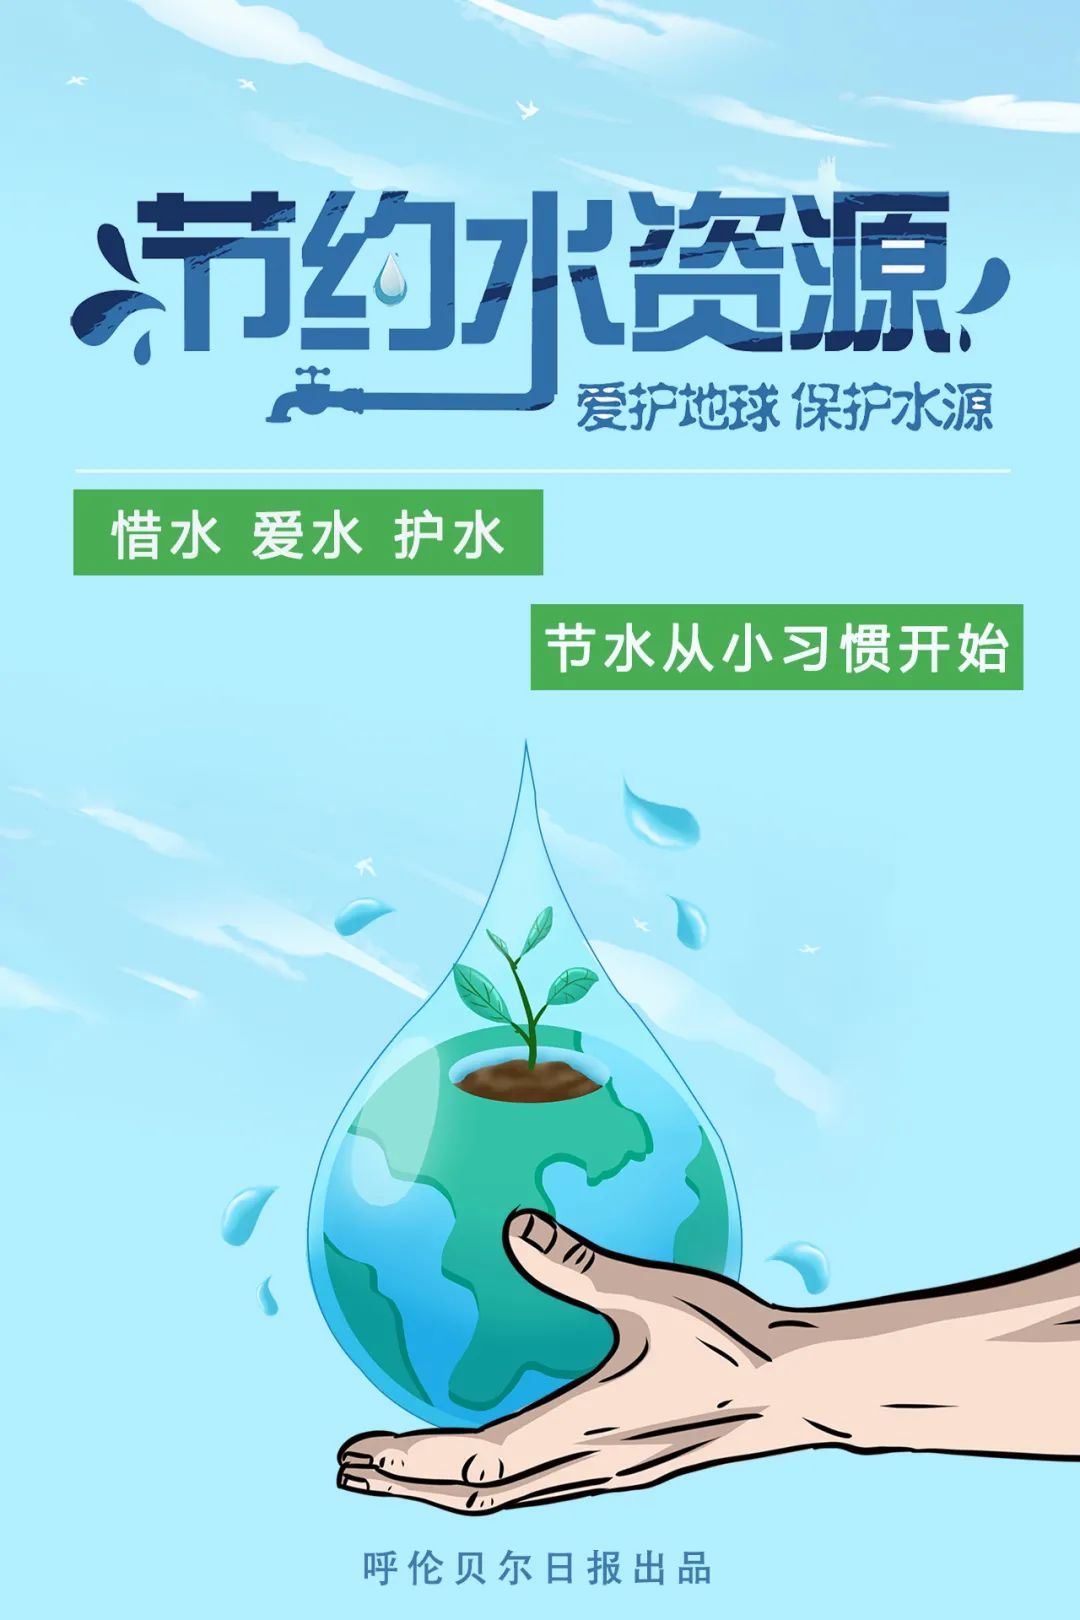 记者:王玥淋海报制作:于博 林雨婷 马海文原标题:《珍惜水资源,我们